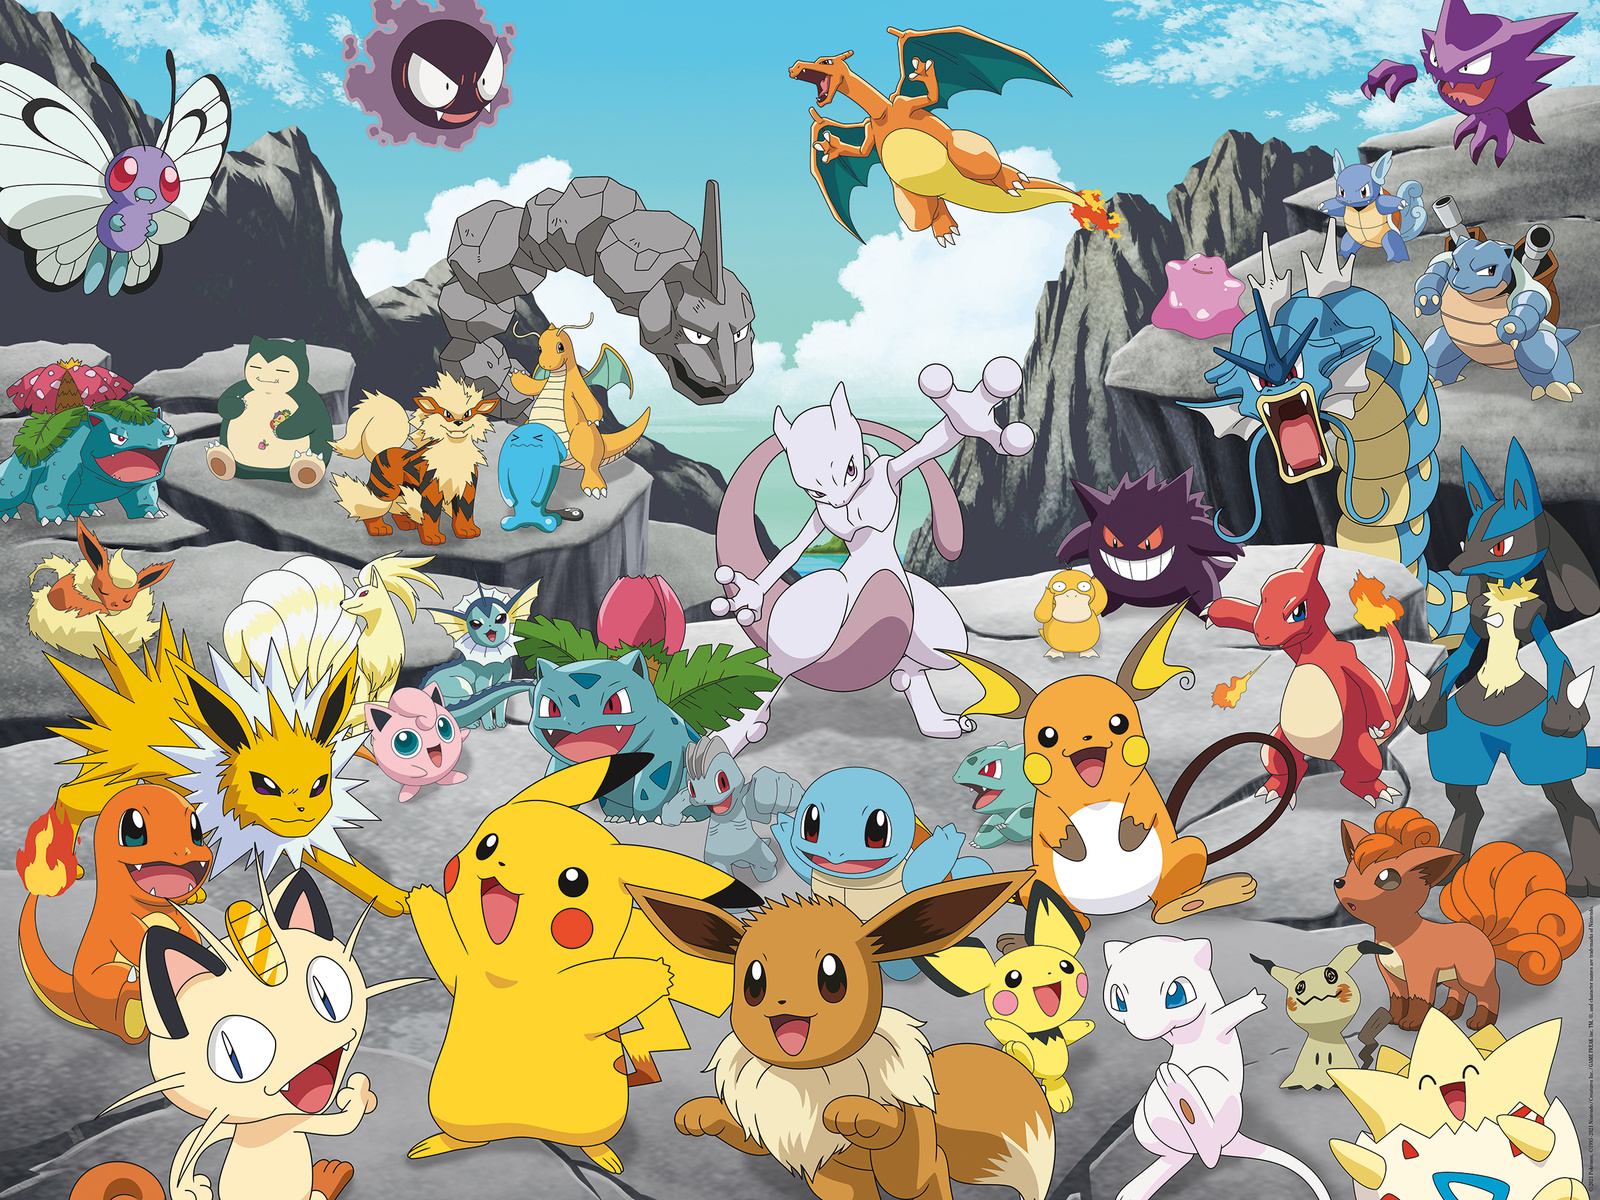 Puzzle Enfant - Attrapez-les tous ! - Pokémon - 200 pièces